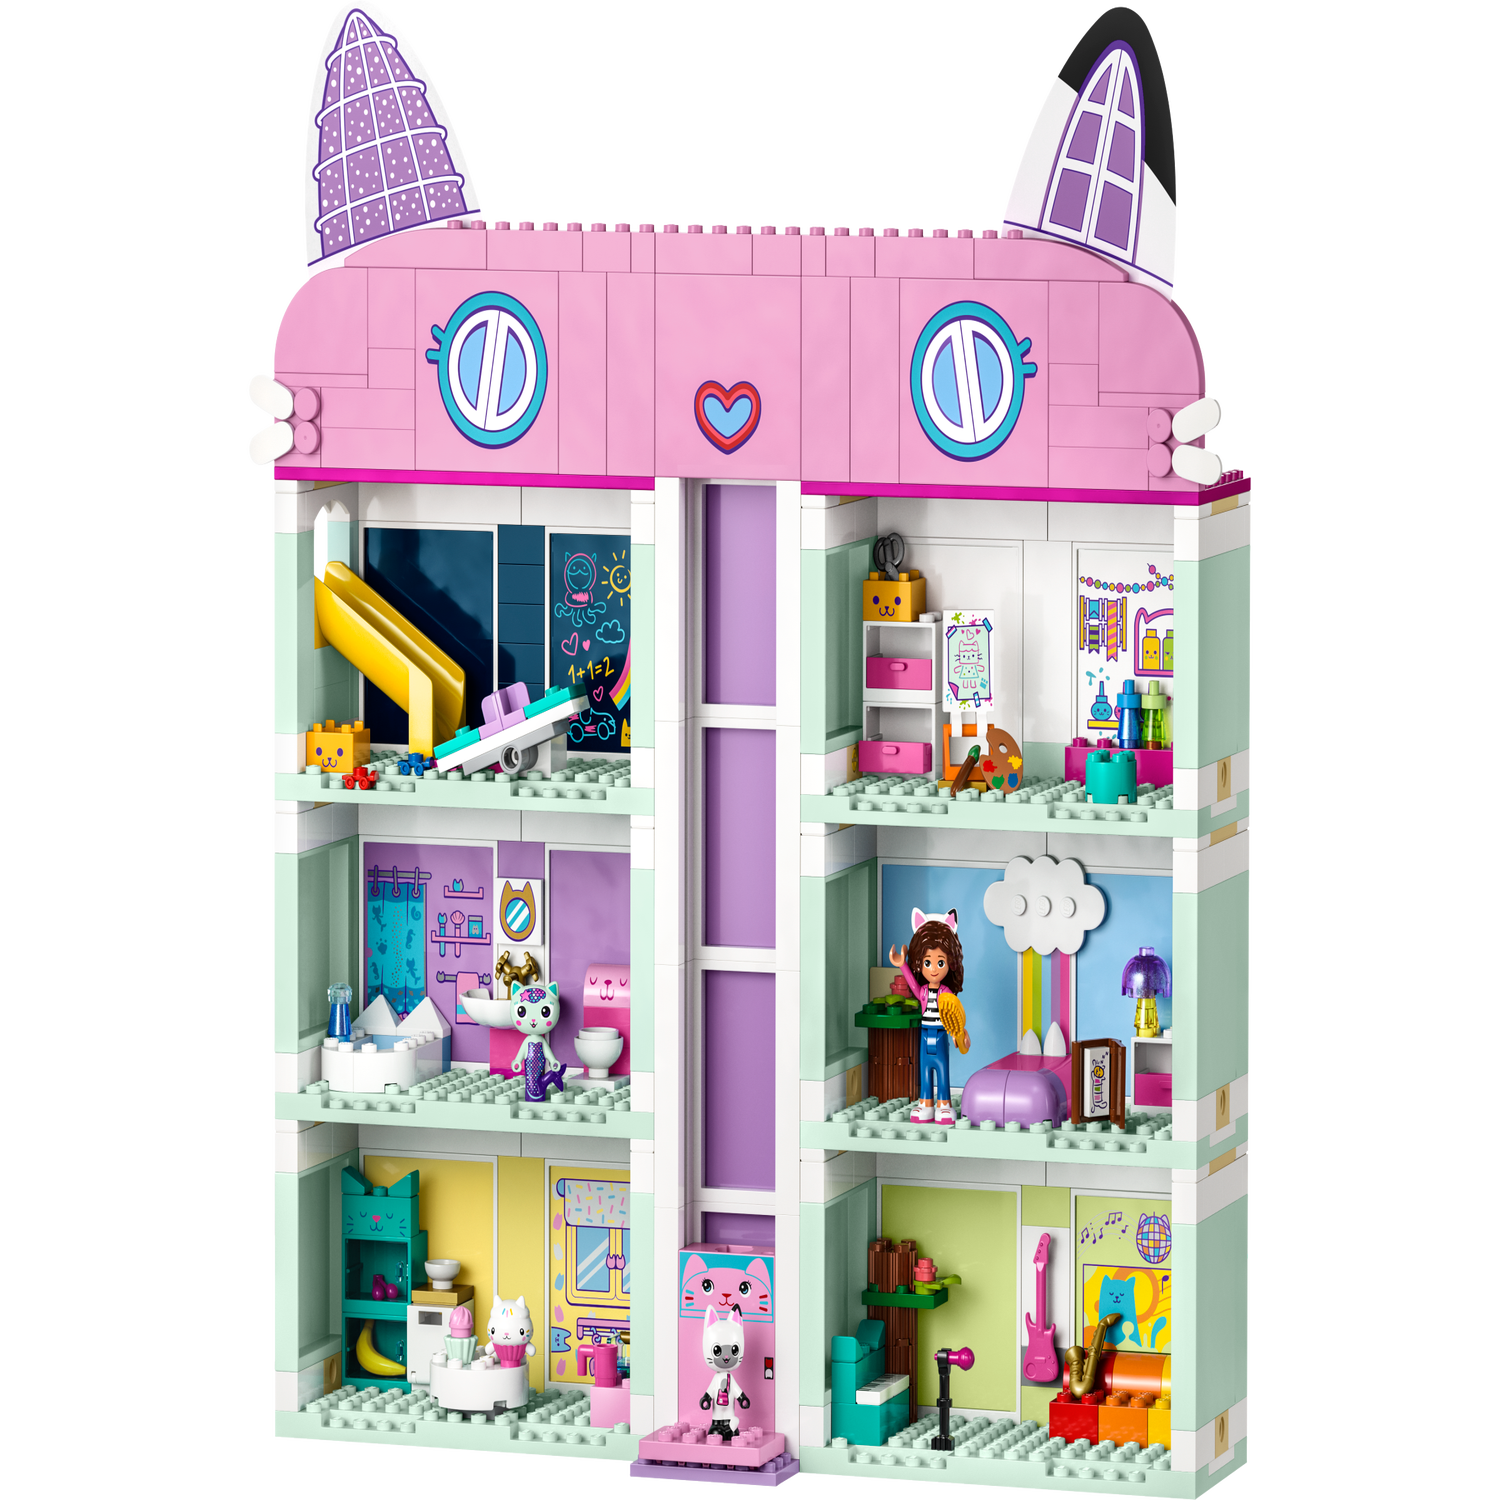 Gabby's Dollhouse 10788, LEGO® Gabby's Dollhouse